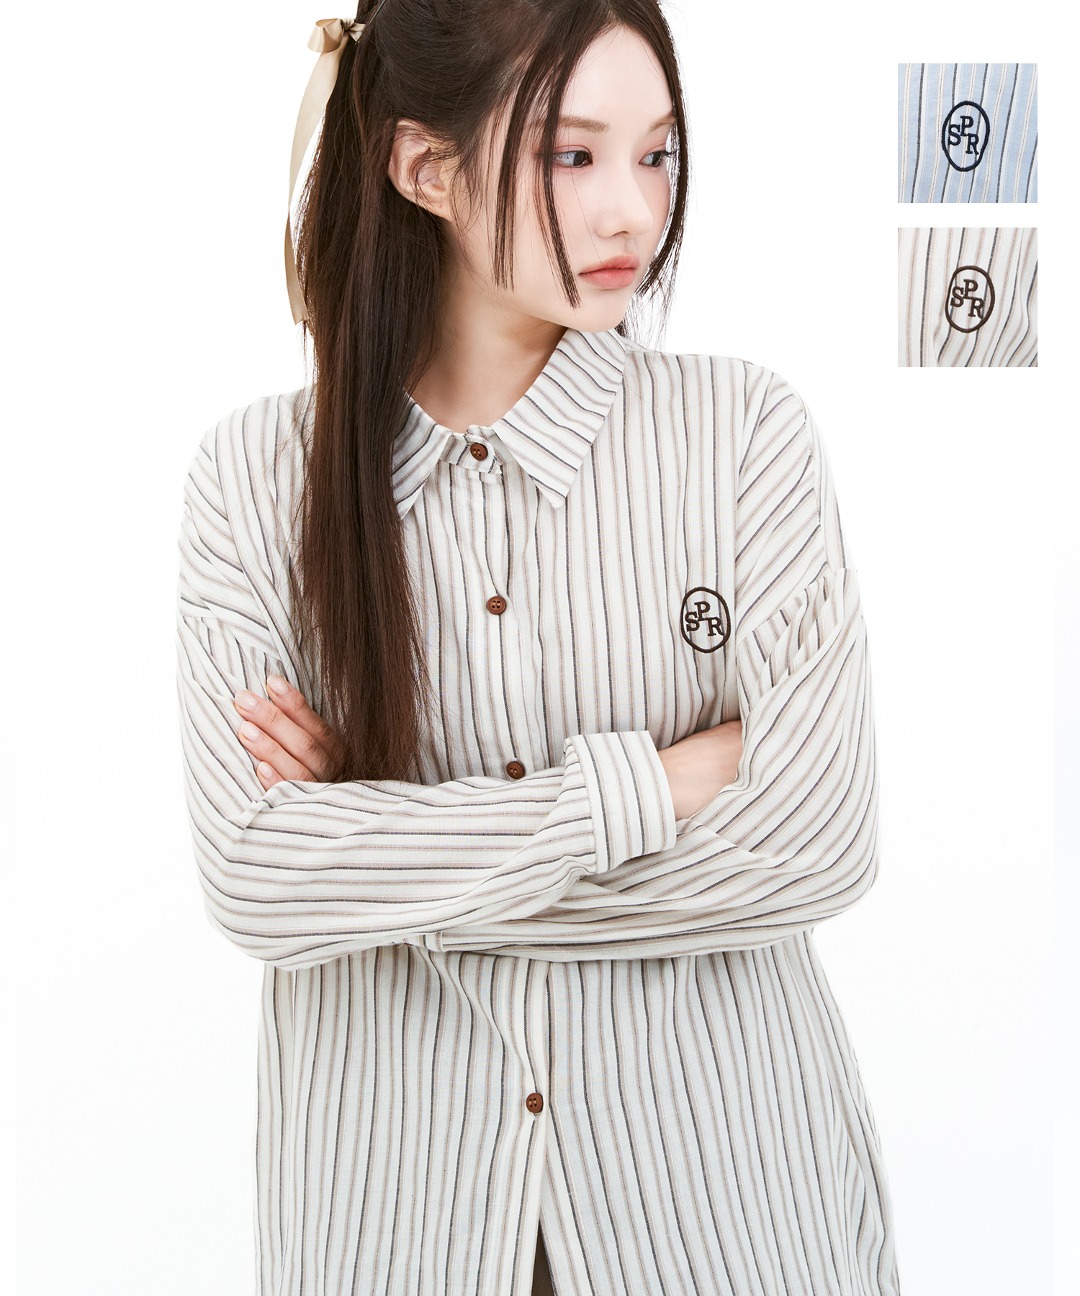 YUSEI 케인 스트라이프 자수 와펜 오버핏 남방 셔츠 (2color)